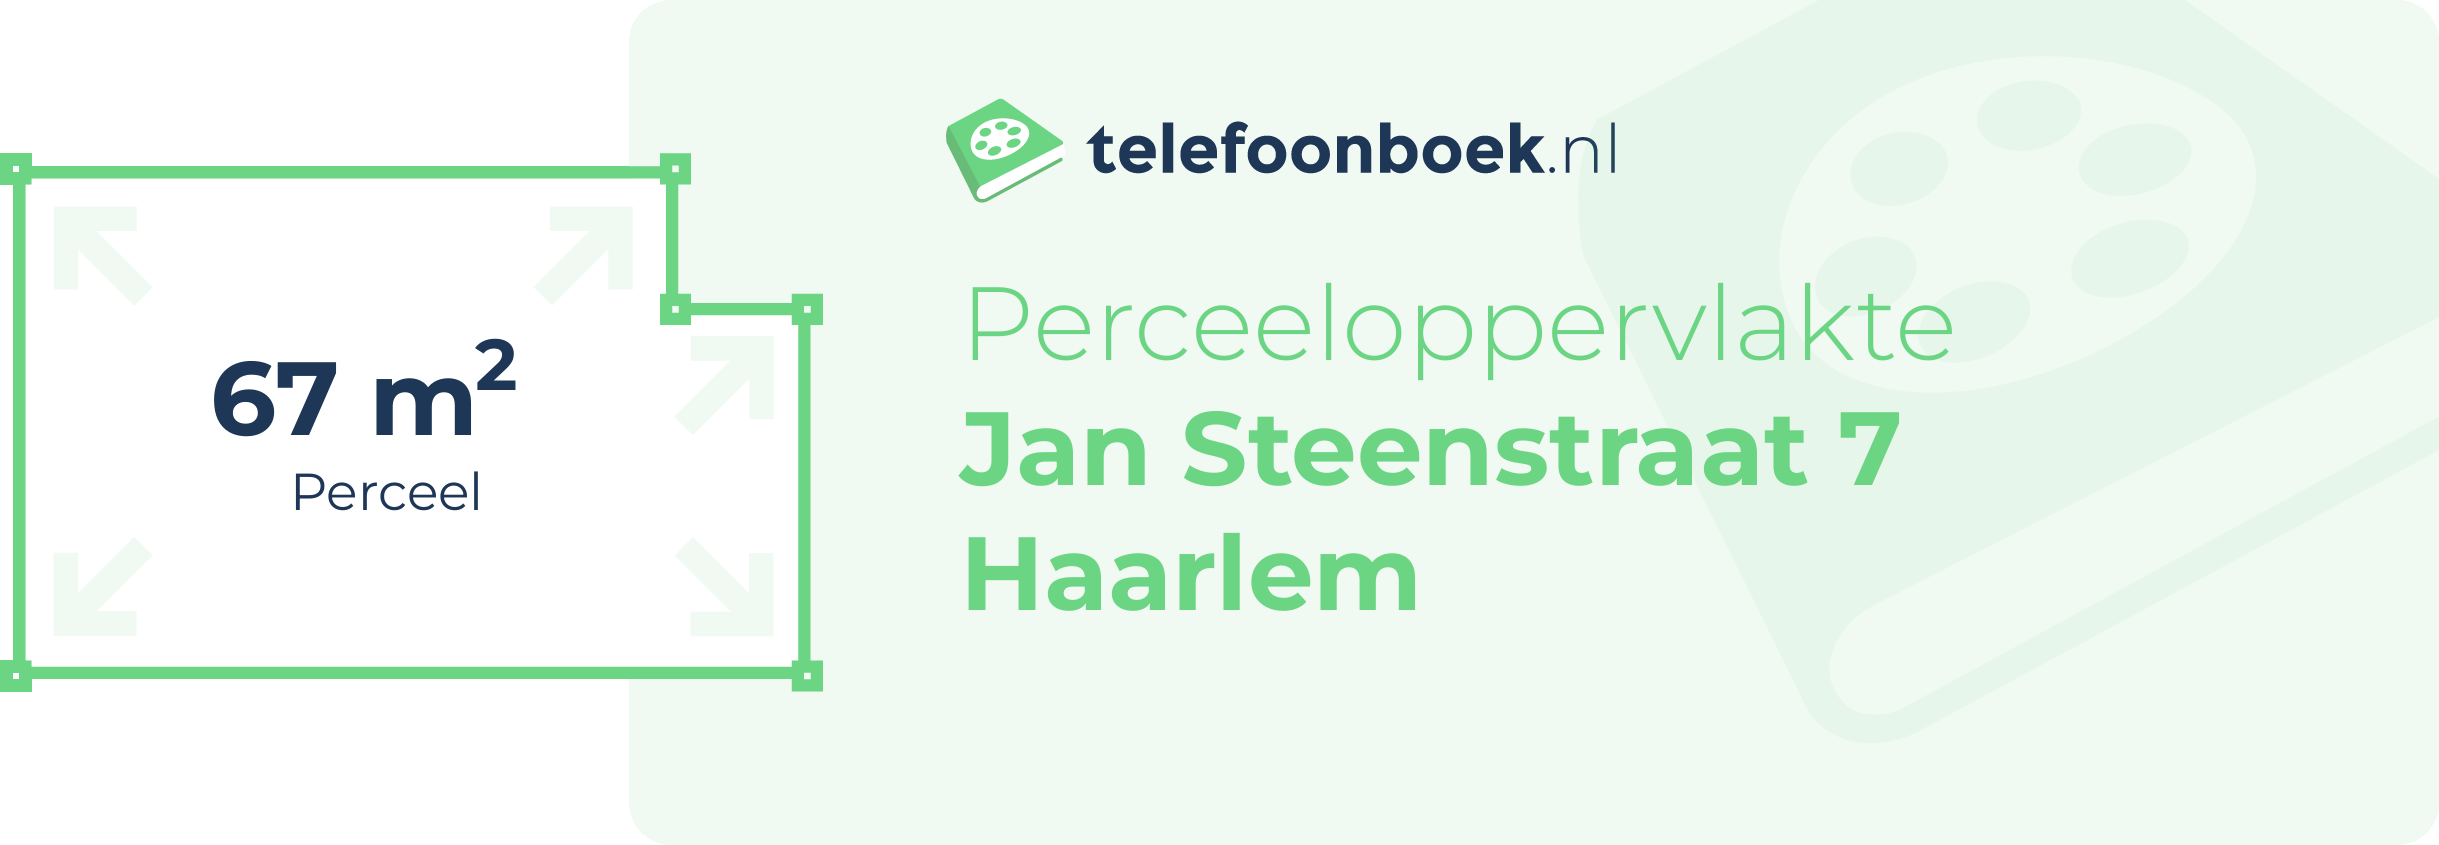 Perceeloppervlakte Jan Steenstraat 7 Haarlem